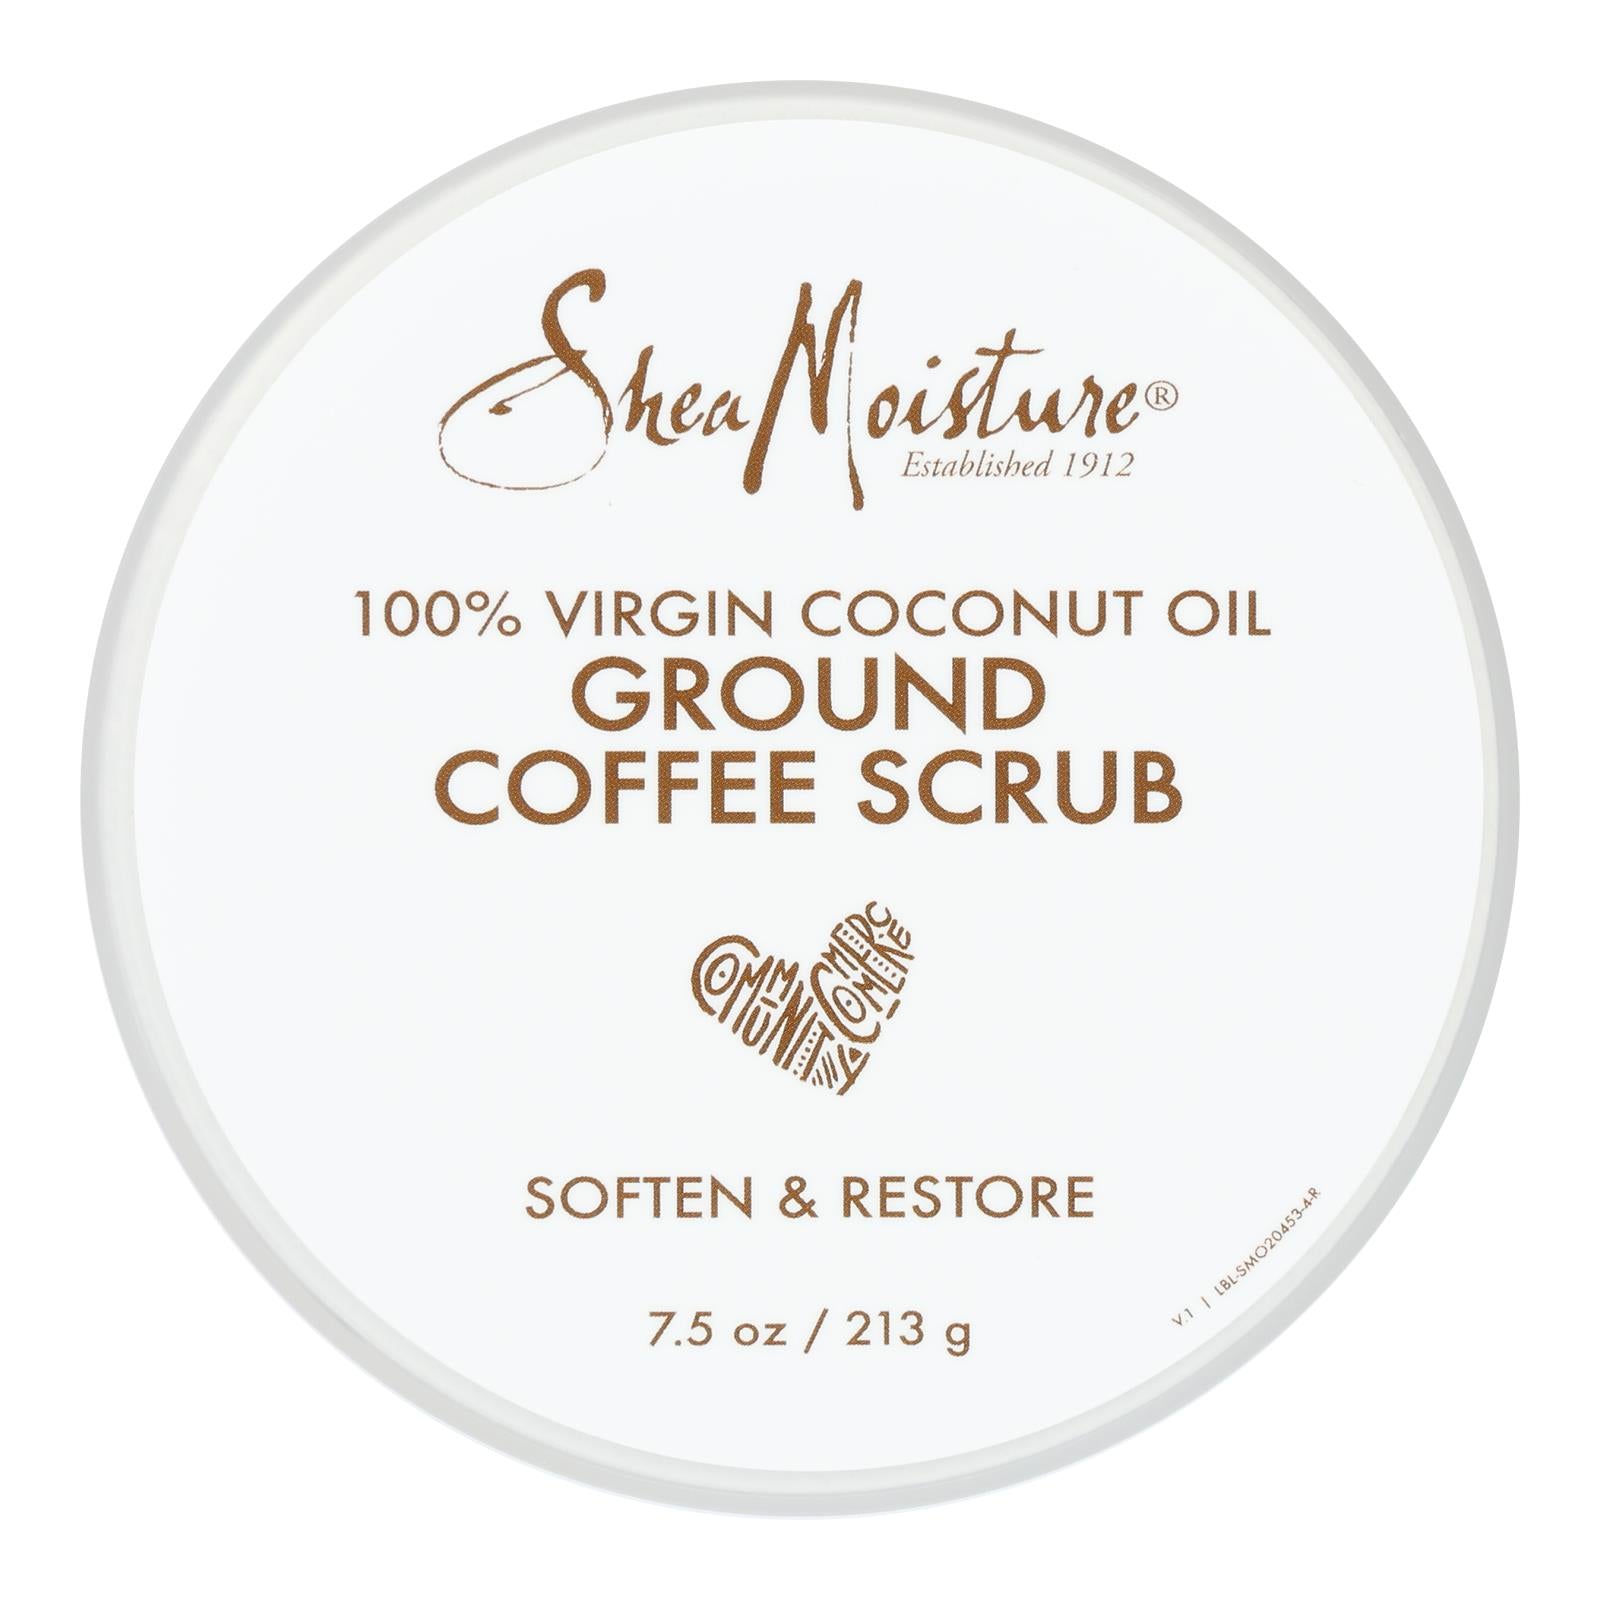 Shea Moisture, Shea Moisture - Grd Coffee Scrub Vr Coconut Oil - 1 Each - 7.5 OZ